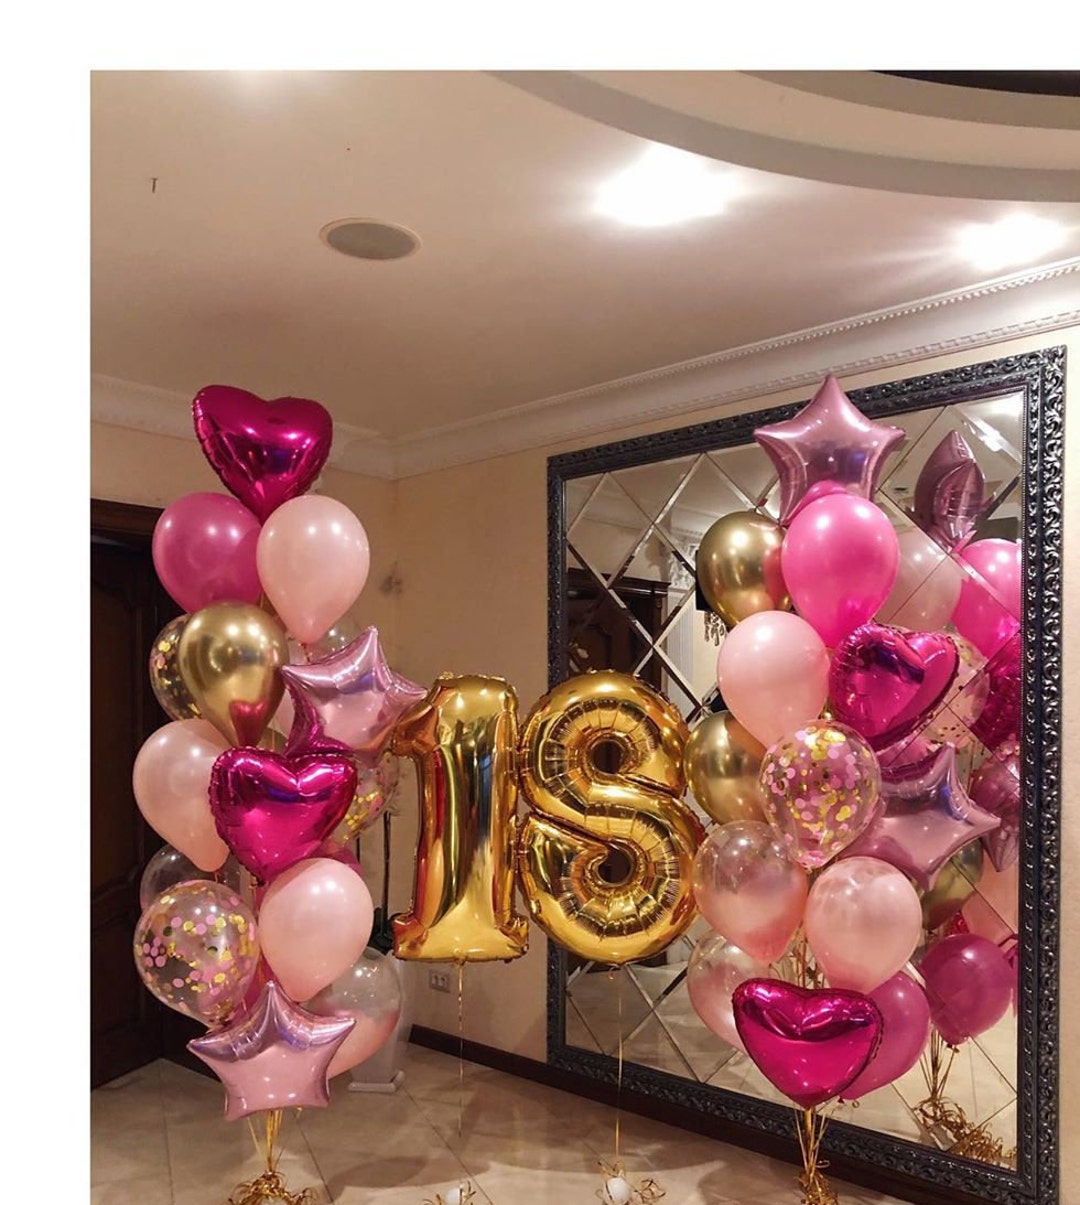 Palloncini rosa chiaro  Madame Clari - Articoli per Feste